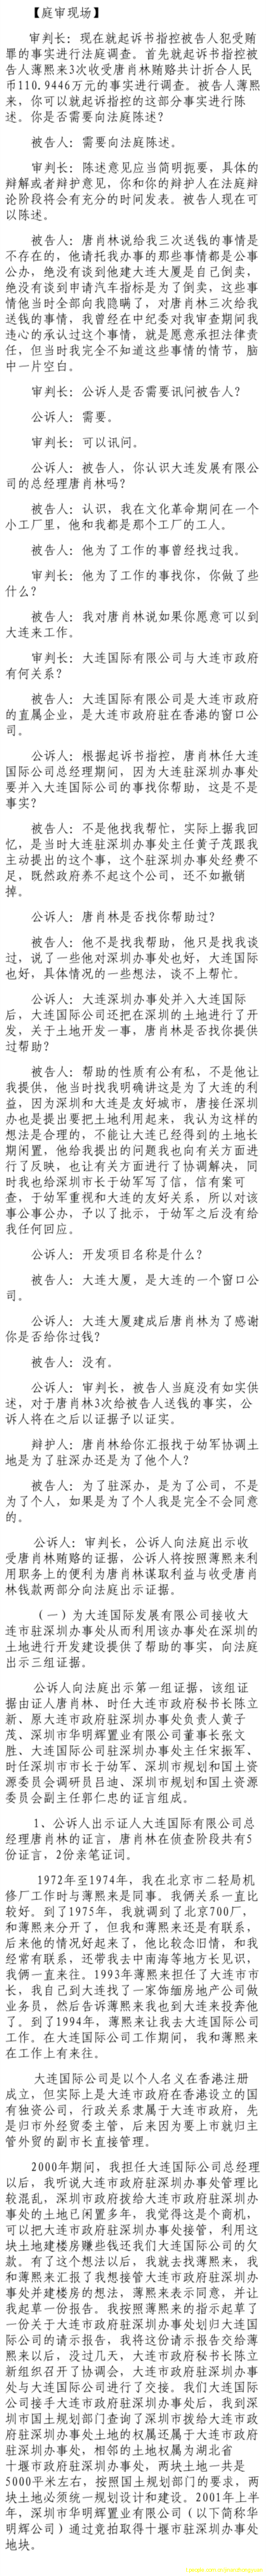 济南市中级法院官方微博公布的8月22日庭审现场记录（2）